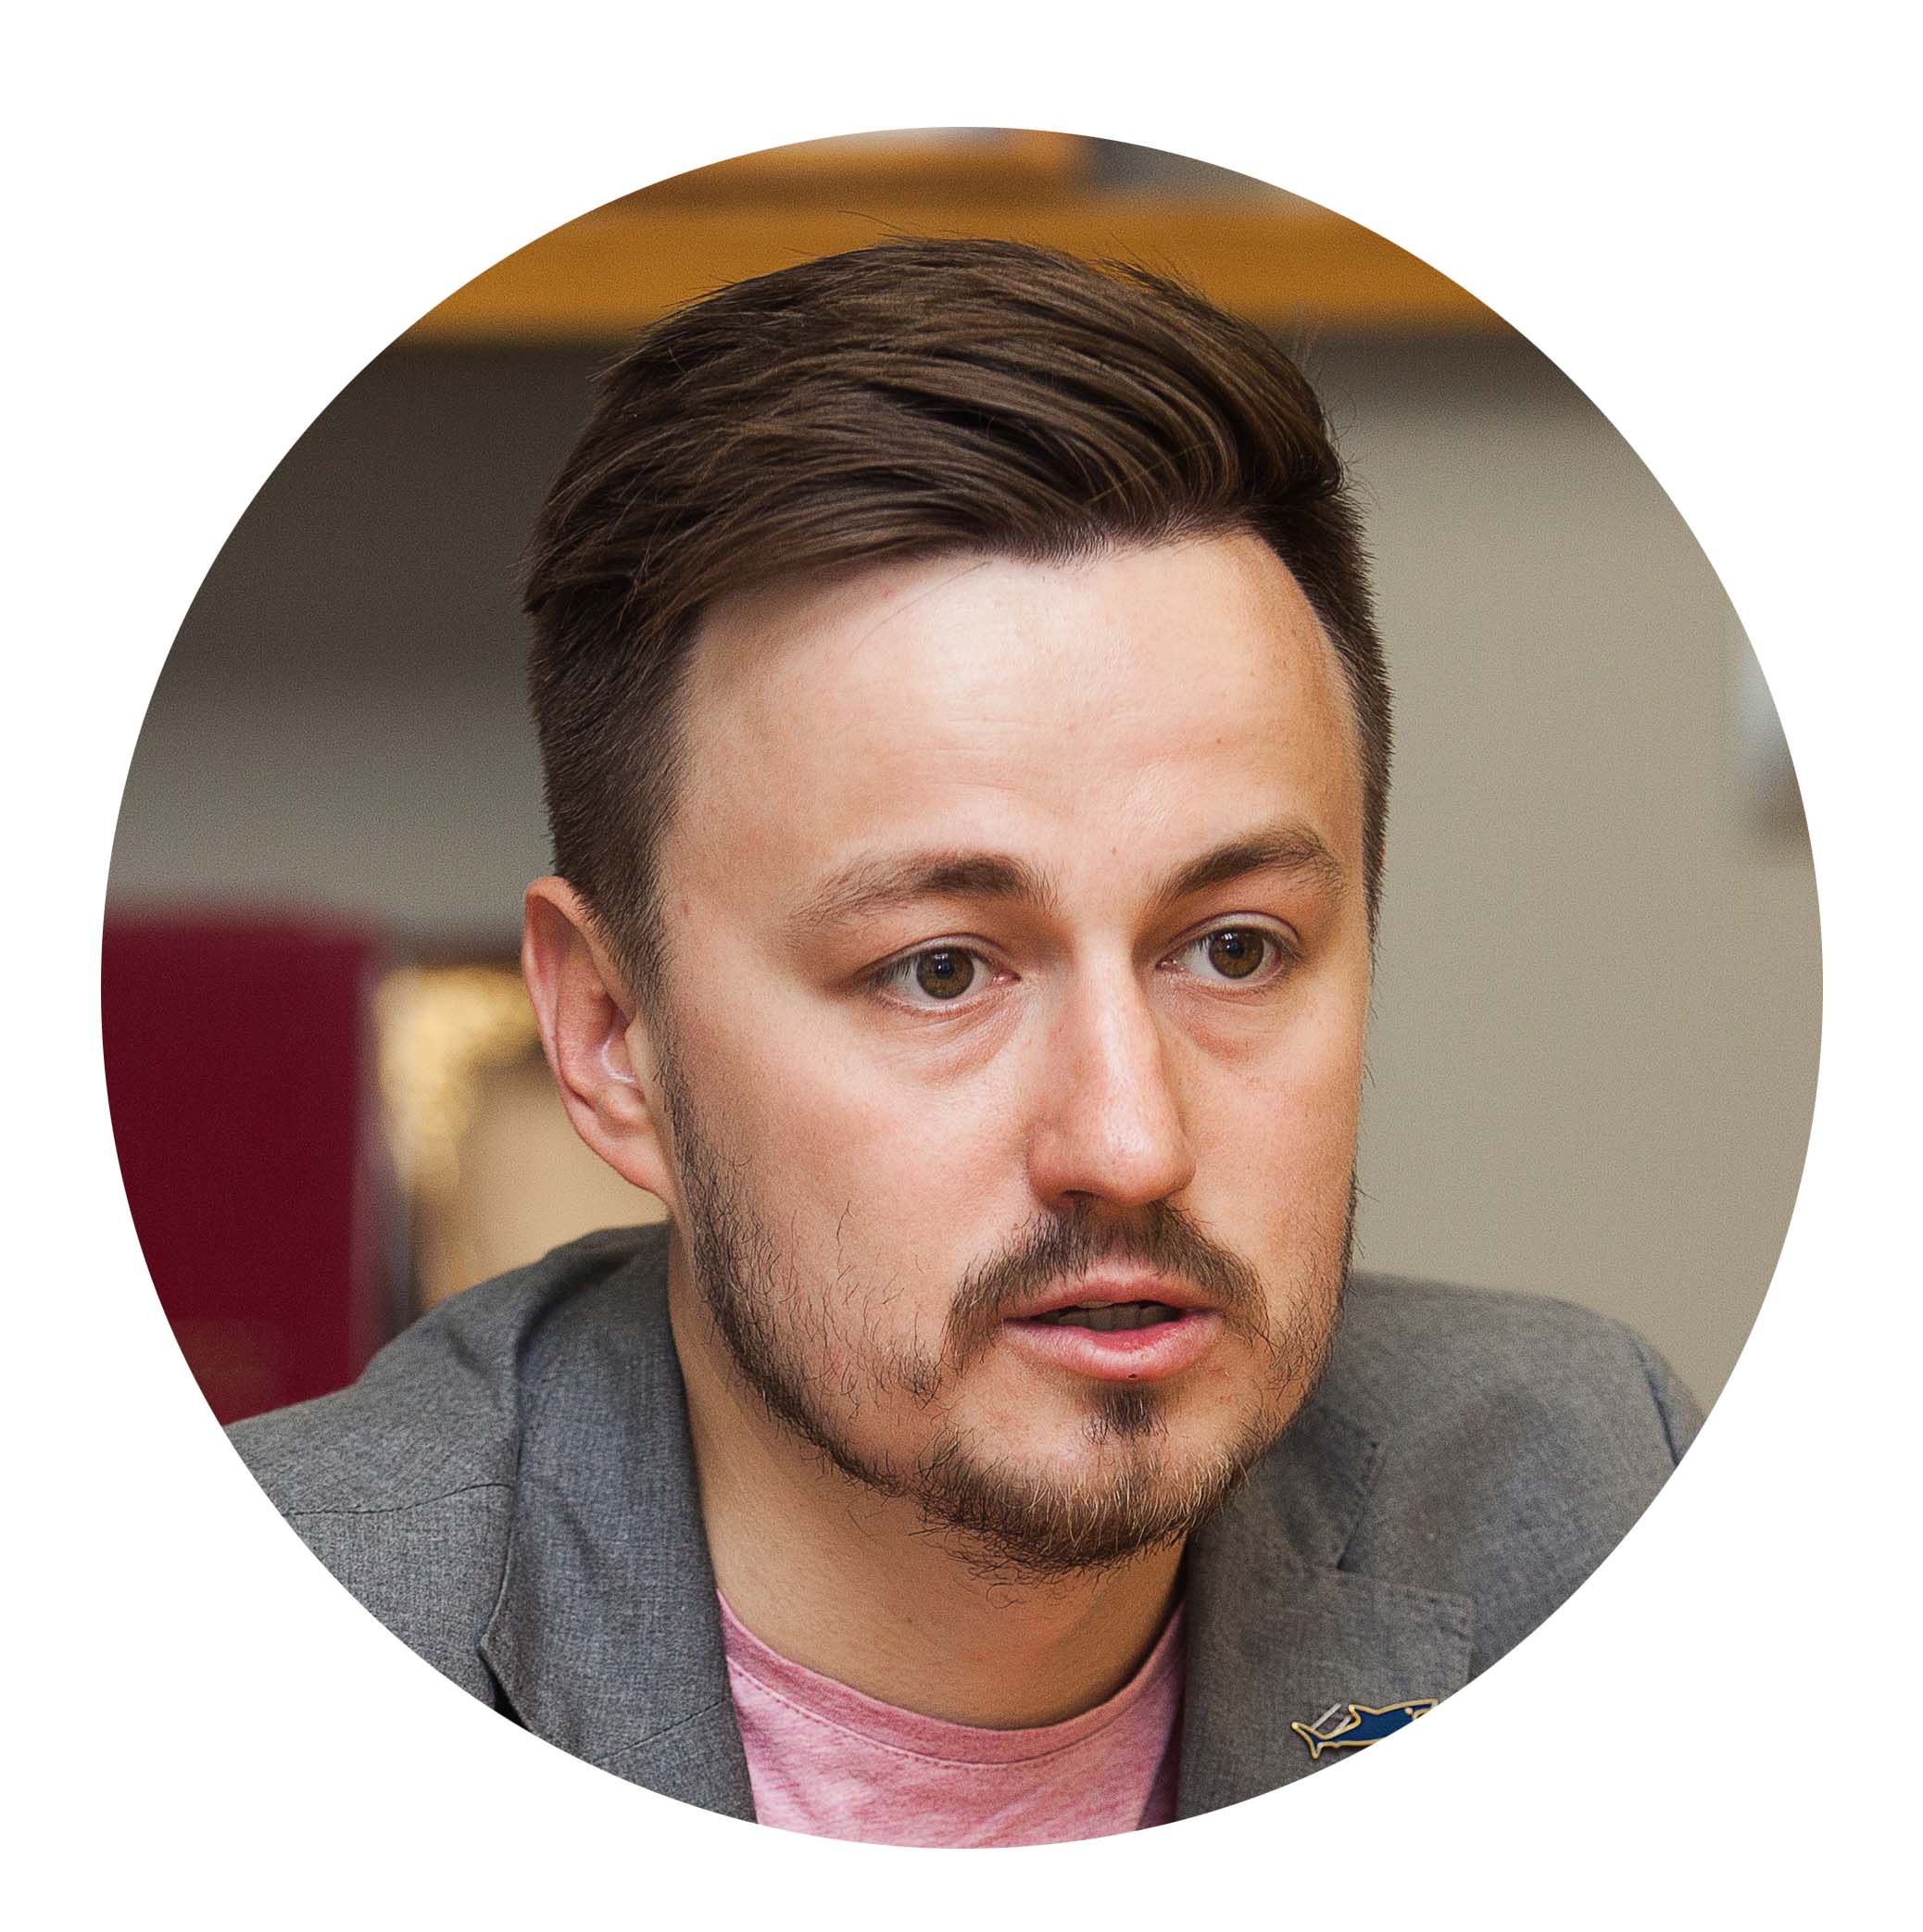 Дмитрий Акулов — управляющий гастробаром «Соль» и рестораном Seasons